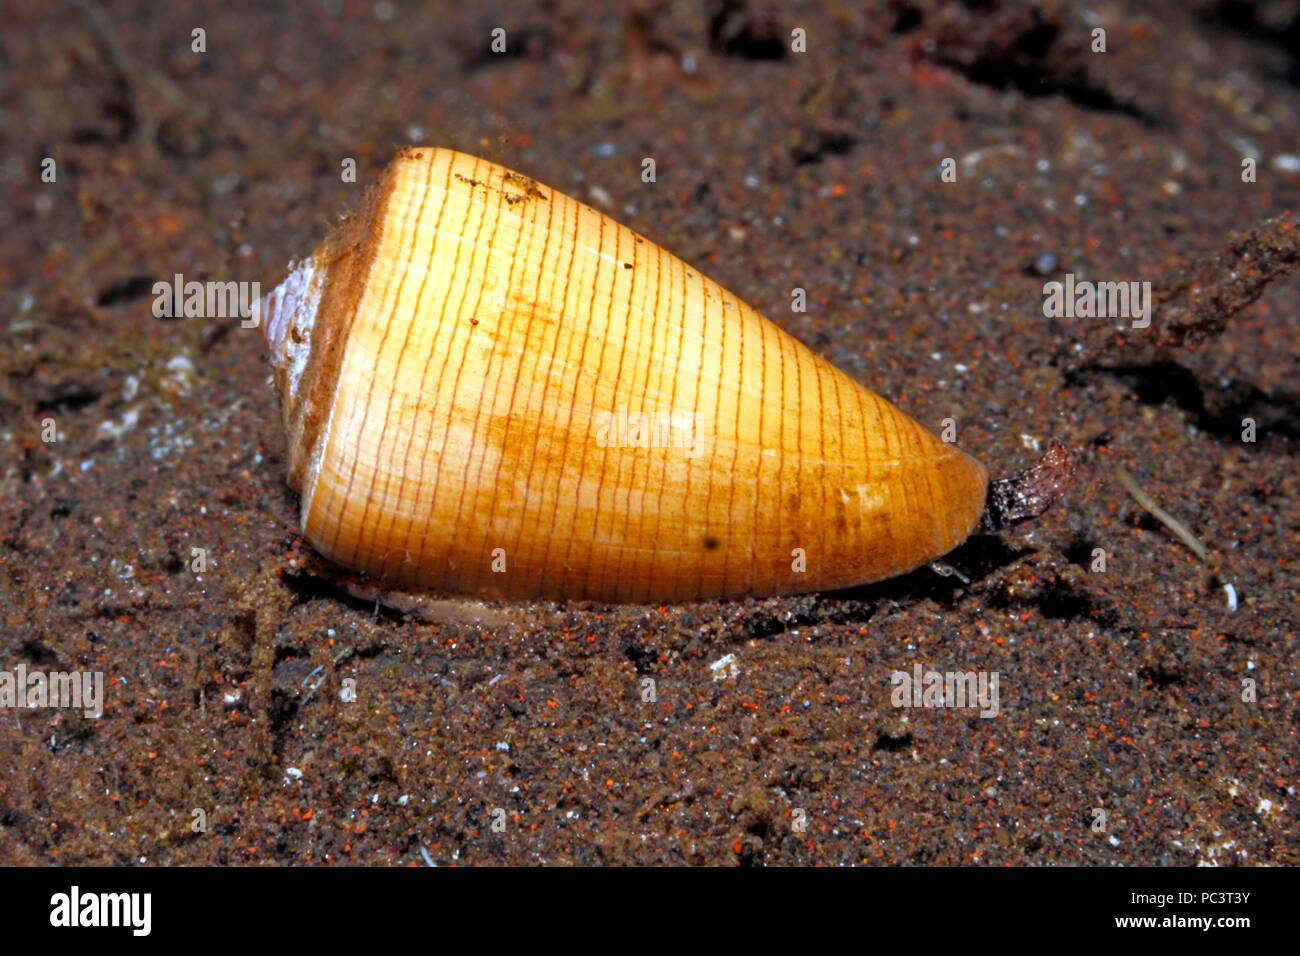 Eiche Kegel Shell, oder gelben Kegel Shell, Conus quercinus. Leben unter Wasser mit Siphon und Auge. Tulamben, Bali, Indonesien. Bali Sea, Indischer Ozean Stockfoto